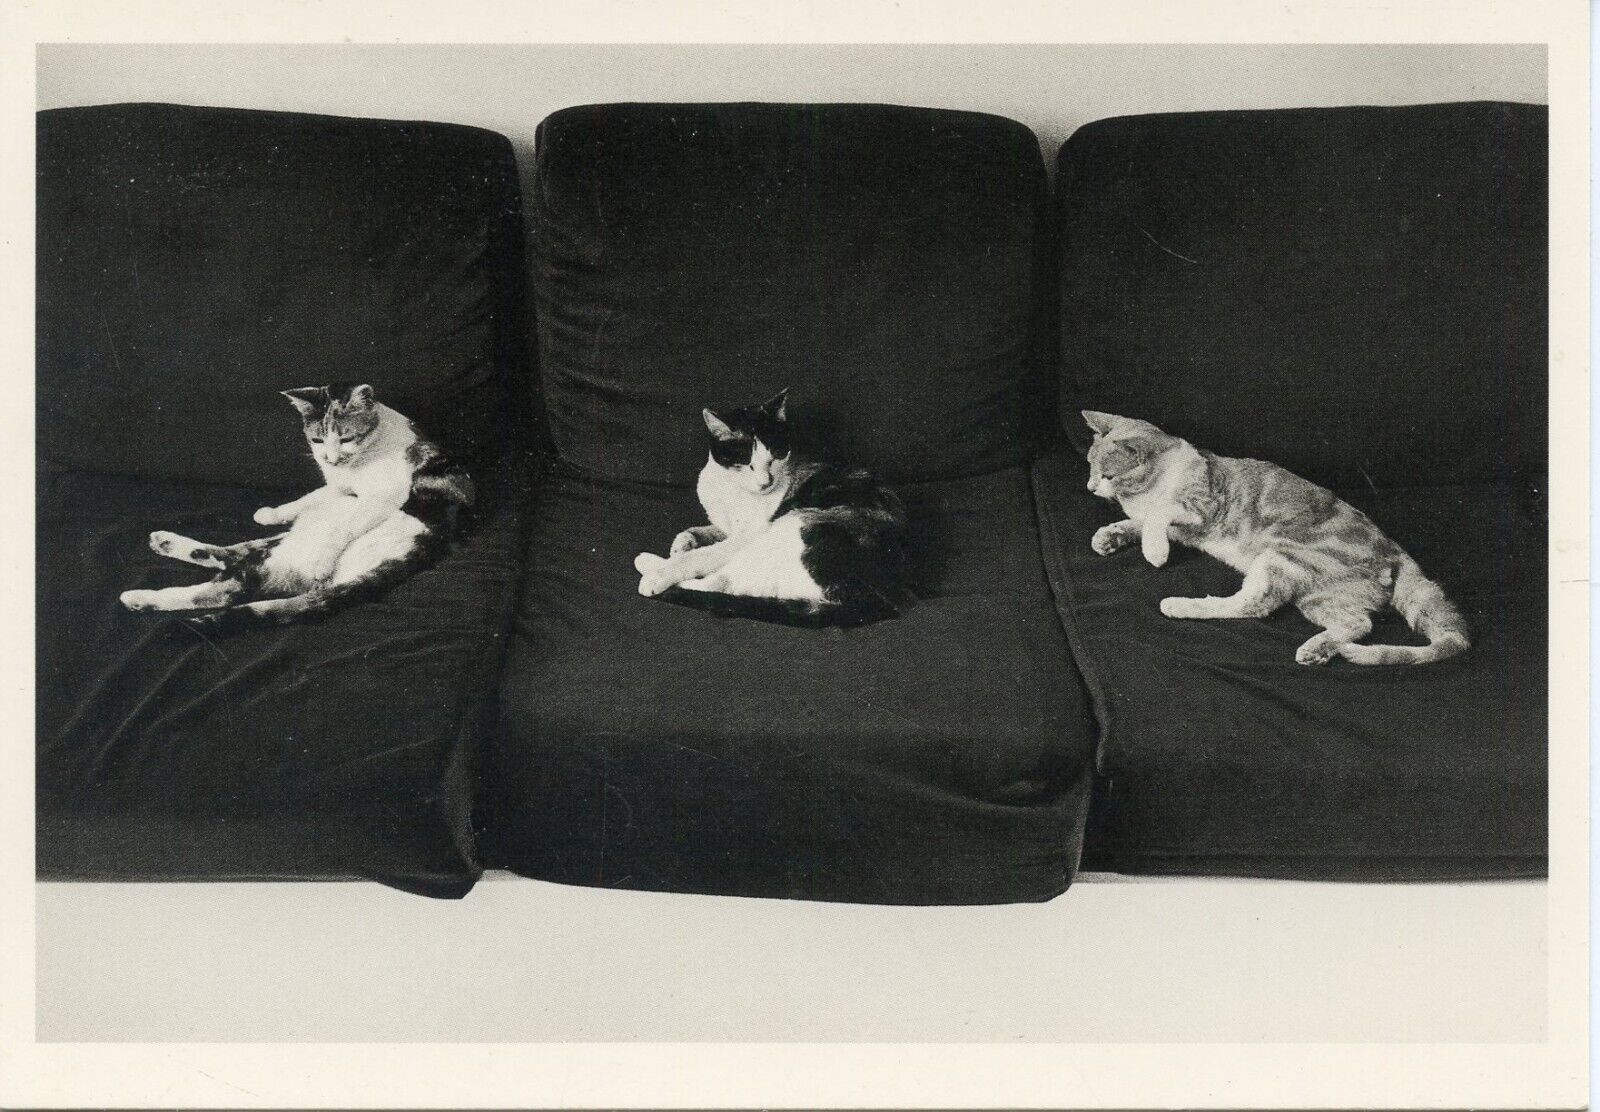 1981 CPSM / ILLUSTRATOR JEAN AMAR STONE / CAT CAT